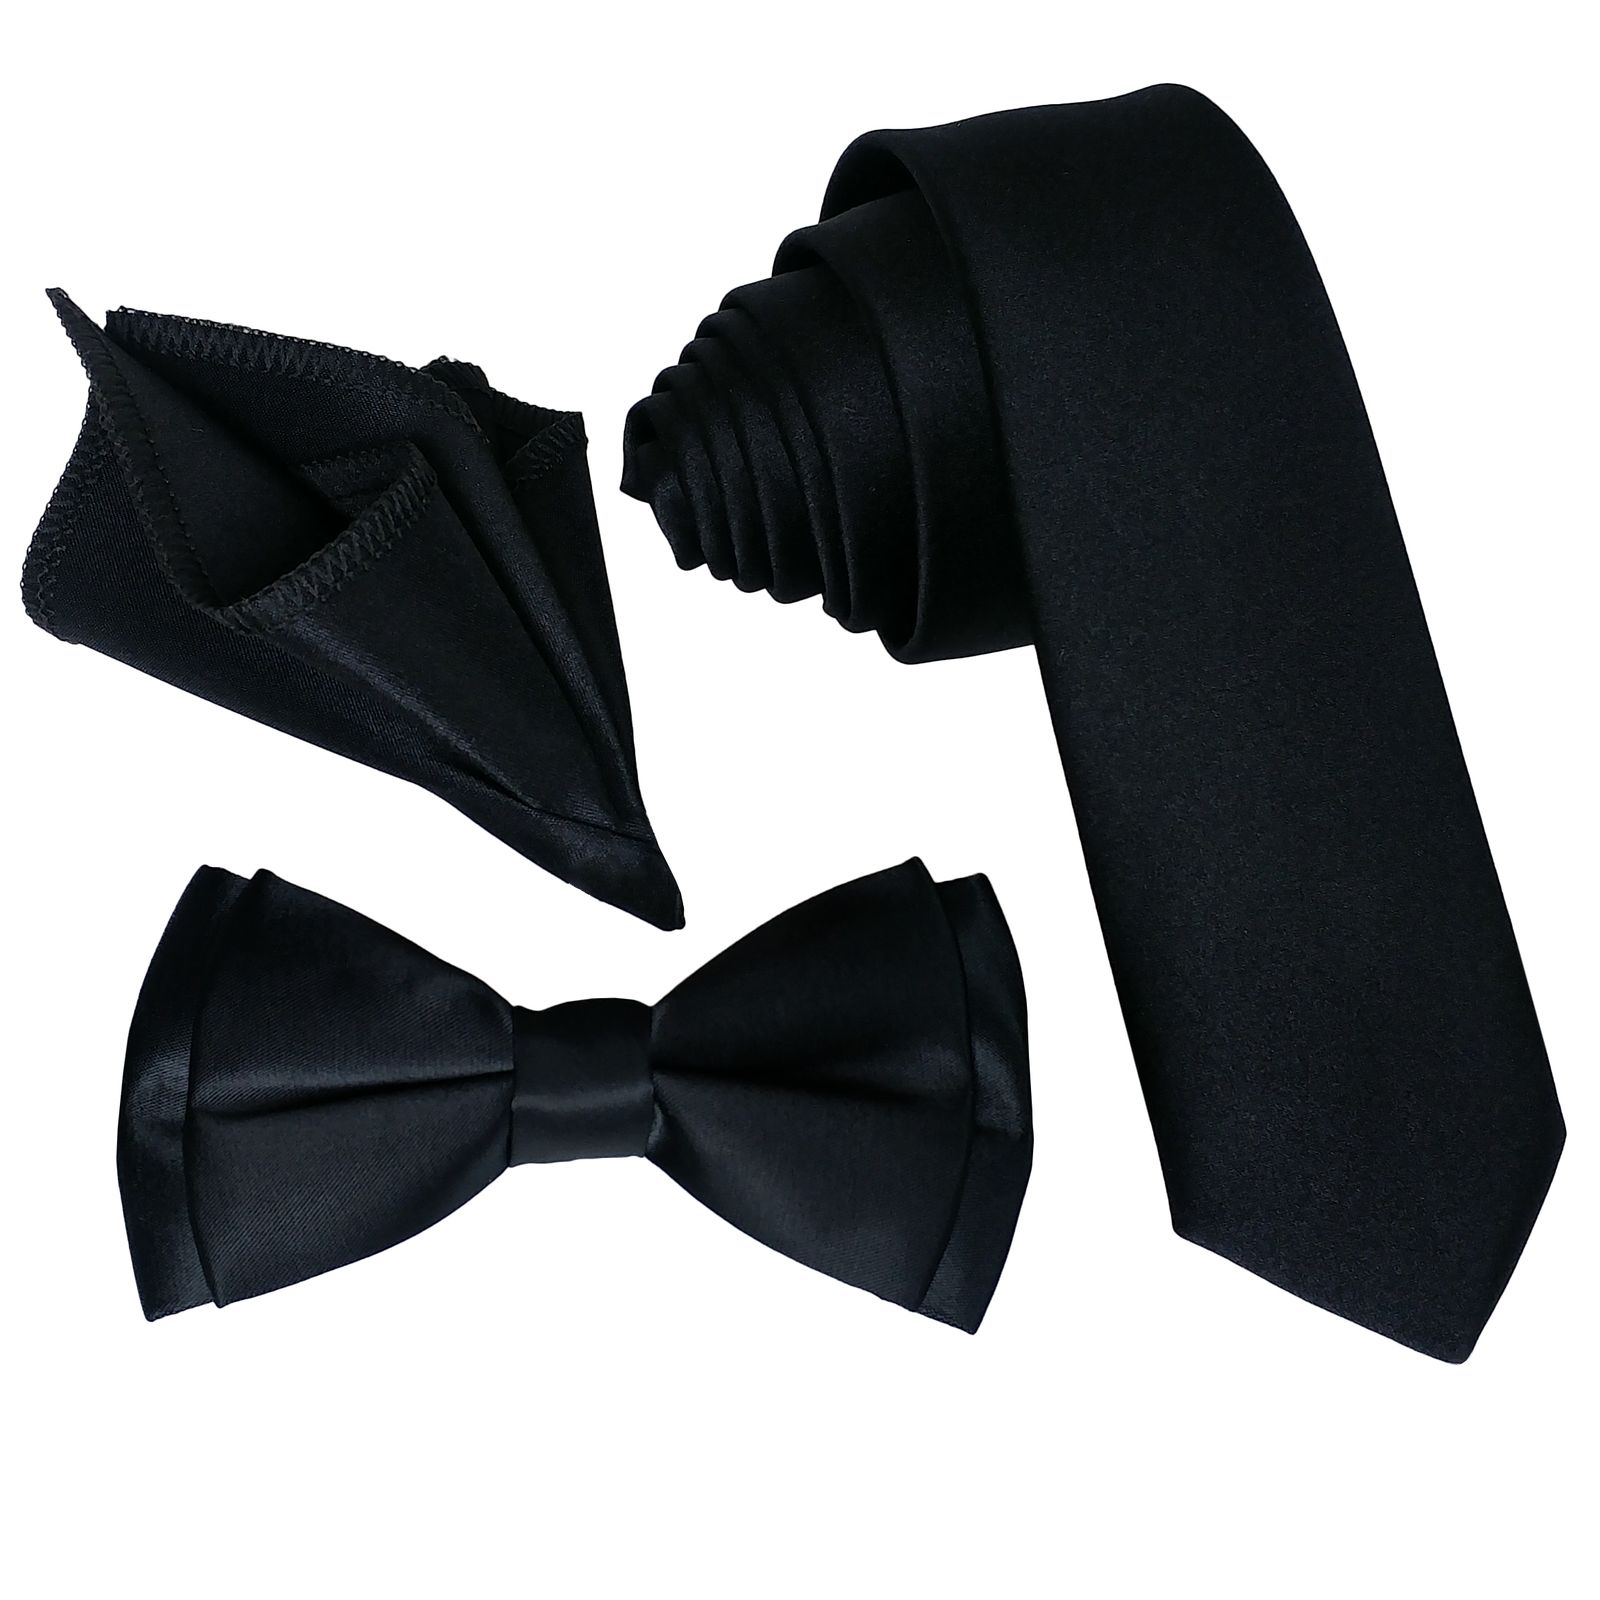  ست کراوات و پاپیون و دستمال جیب مردانه کد B3 -  - 1